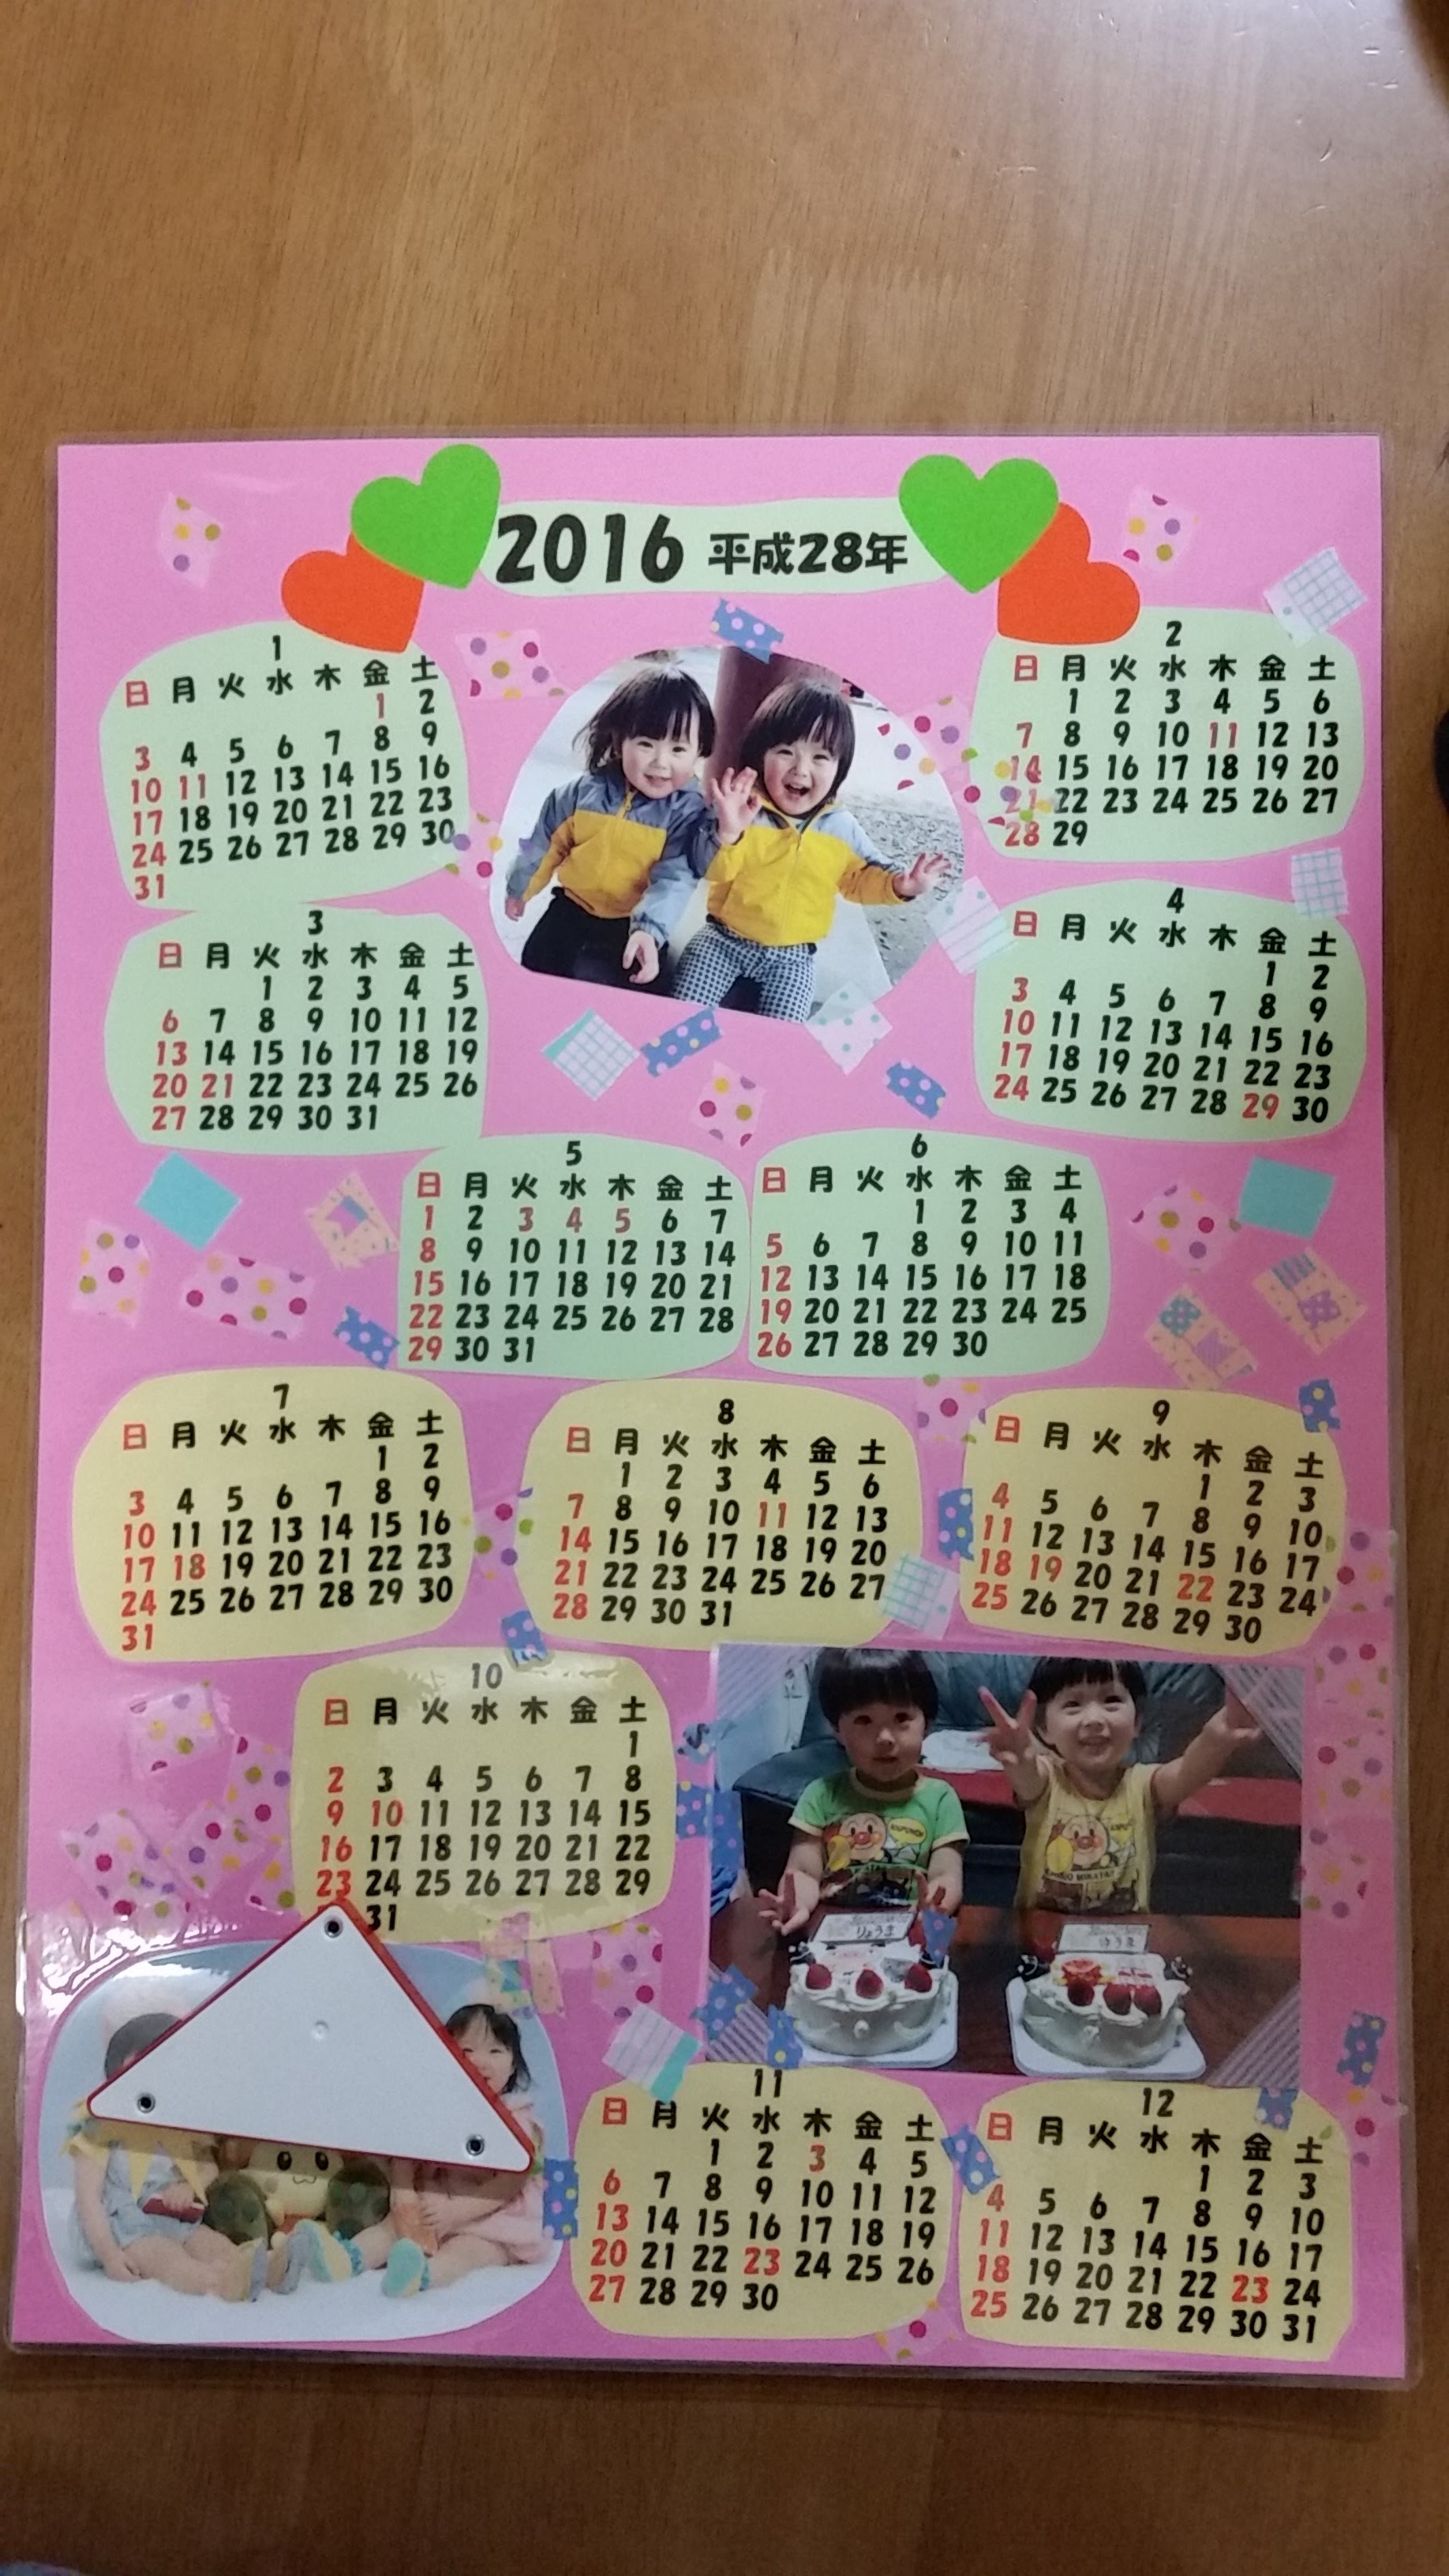 敬老の日にすぐ出来る簡単な手作りプレゼントを3歳の子どもと作ろう カレンダーの作り方は 双子ままの日々のコト